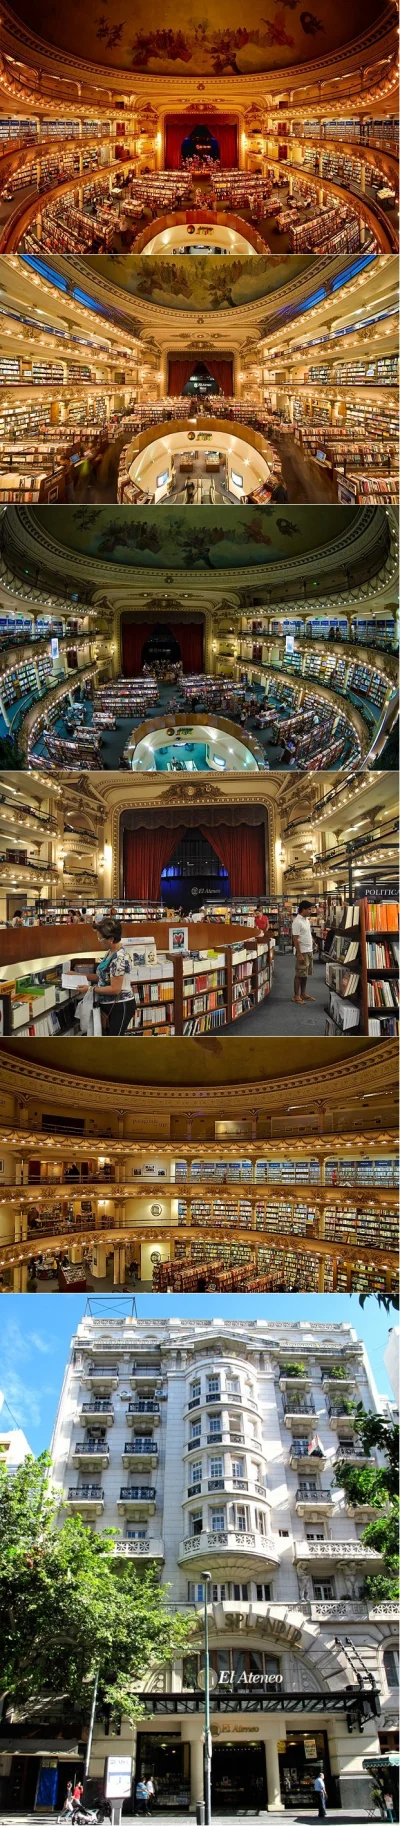 p.....r - #ciekawostki #architektura #sztuka
Grand Splendid Theater w Buenos Aires a...